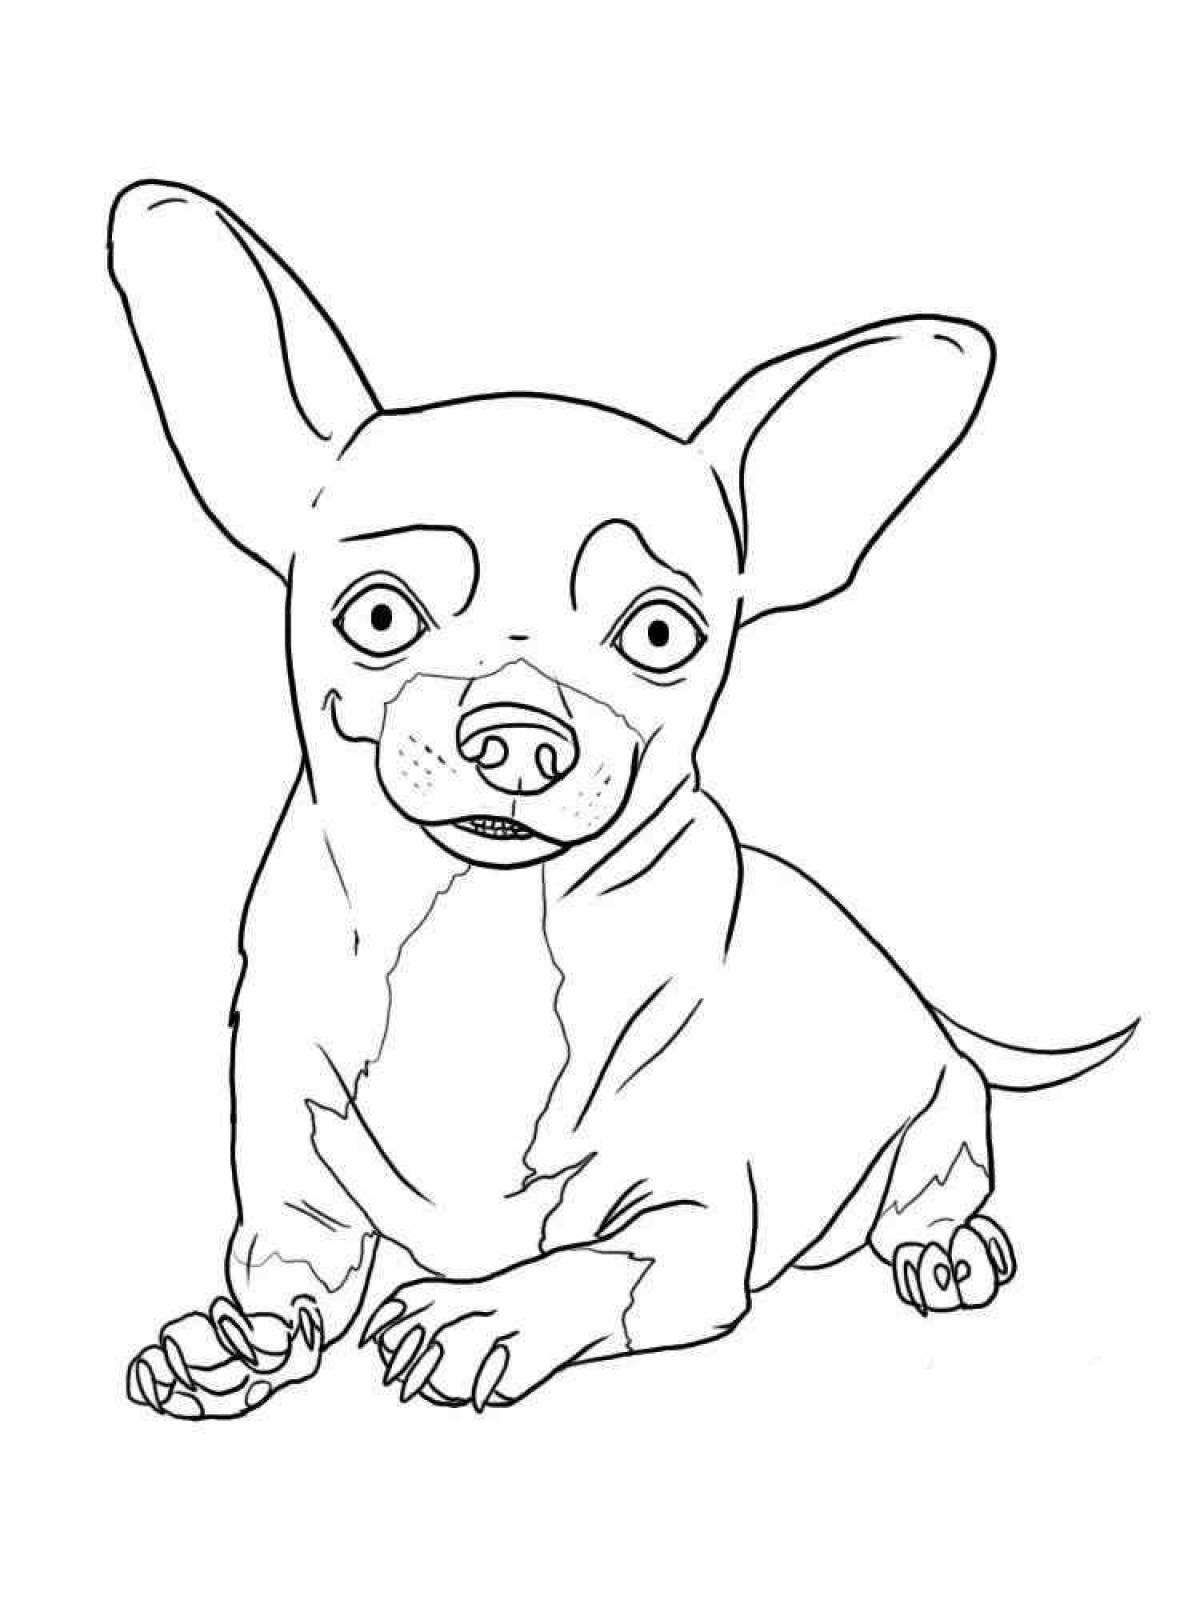 Weggish little dog coloring page